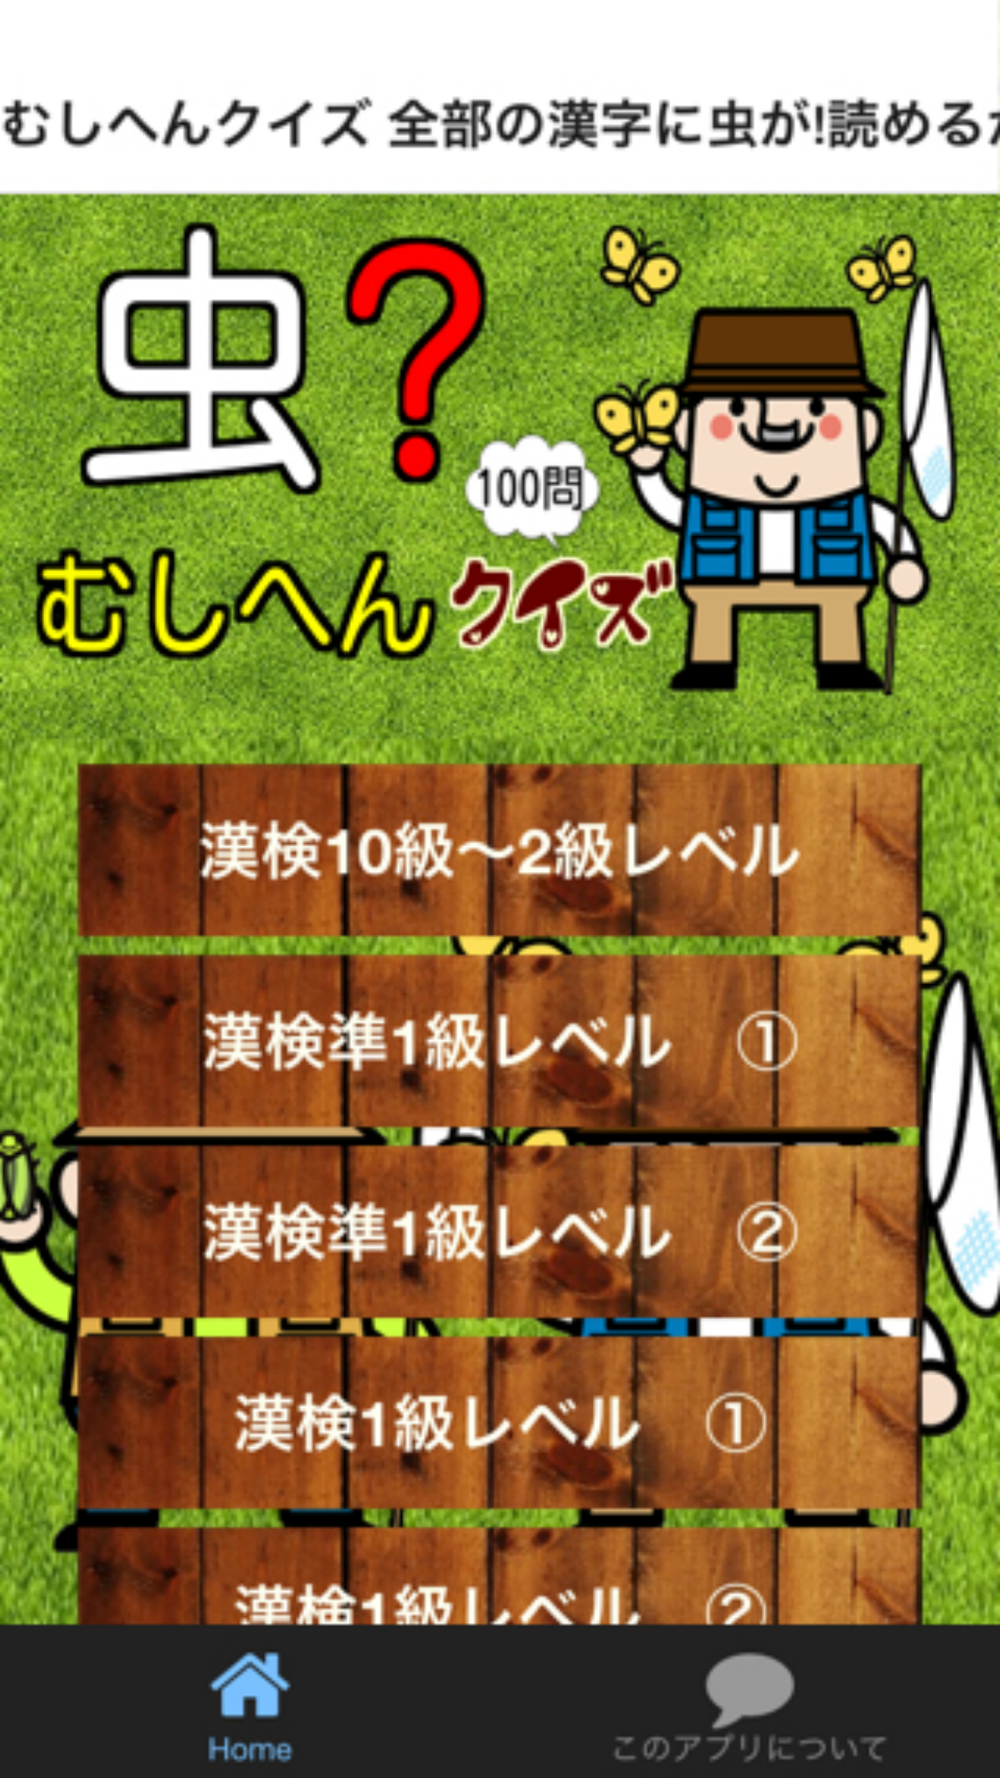 むしへんクイズ 全部の漢字に虫が読めるかな 脳トレ漢検にも Free Download App For Iphone Steprimo Com